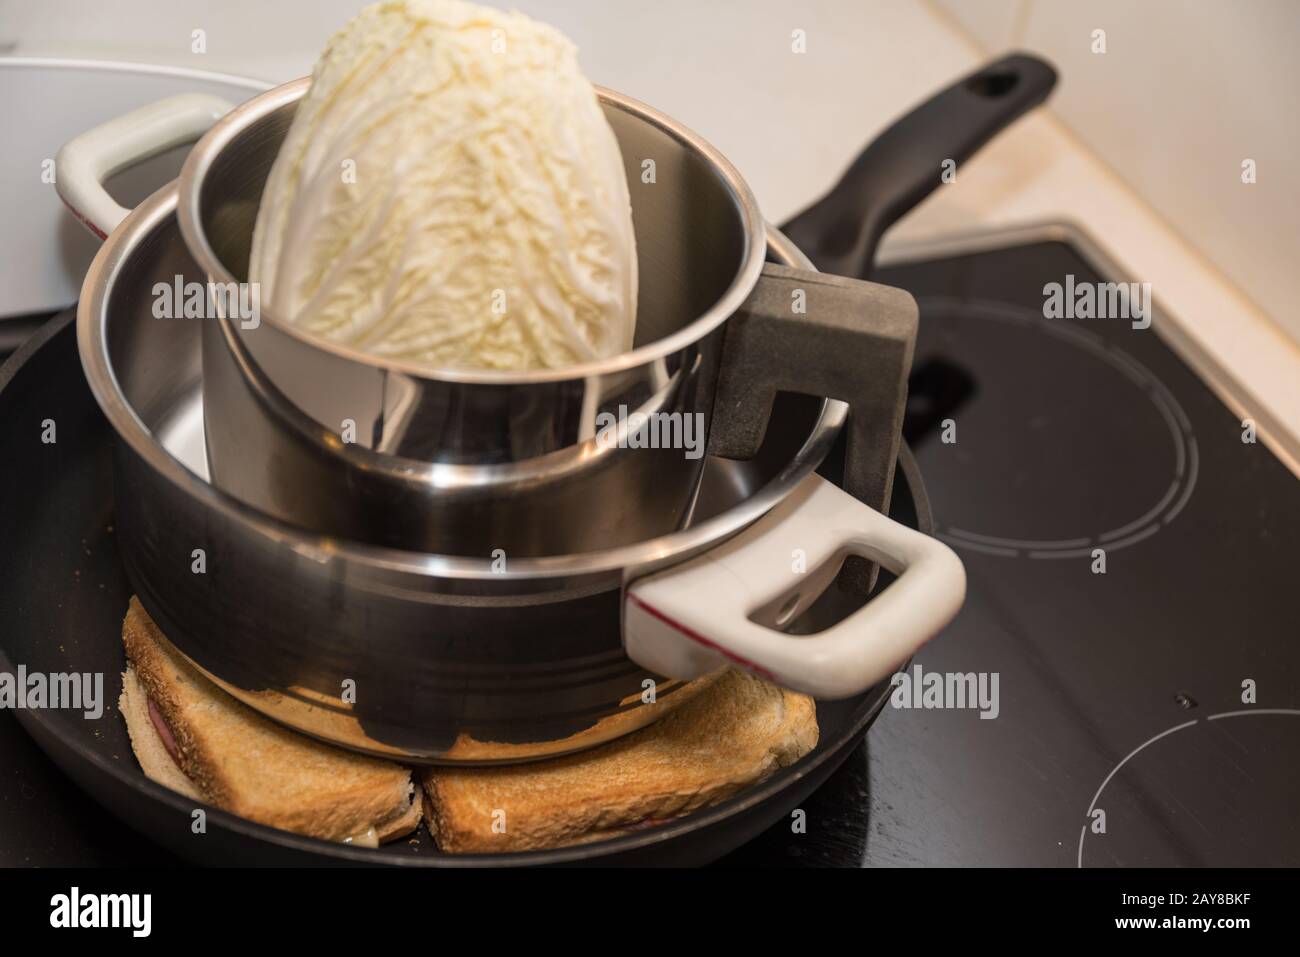 Toastvariante auf dem Küchenofen in einer Bratpfanne zubereitet Stockfoto